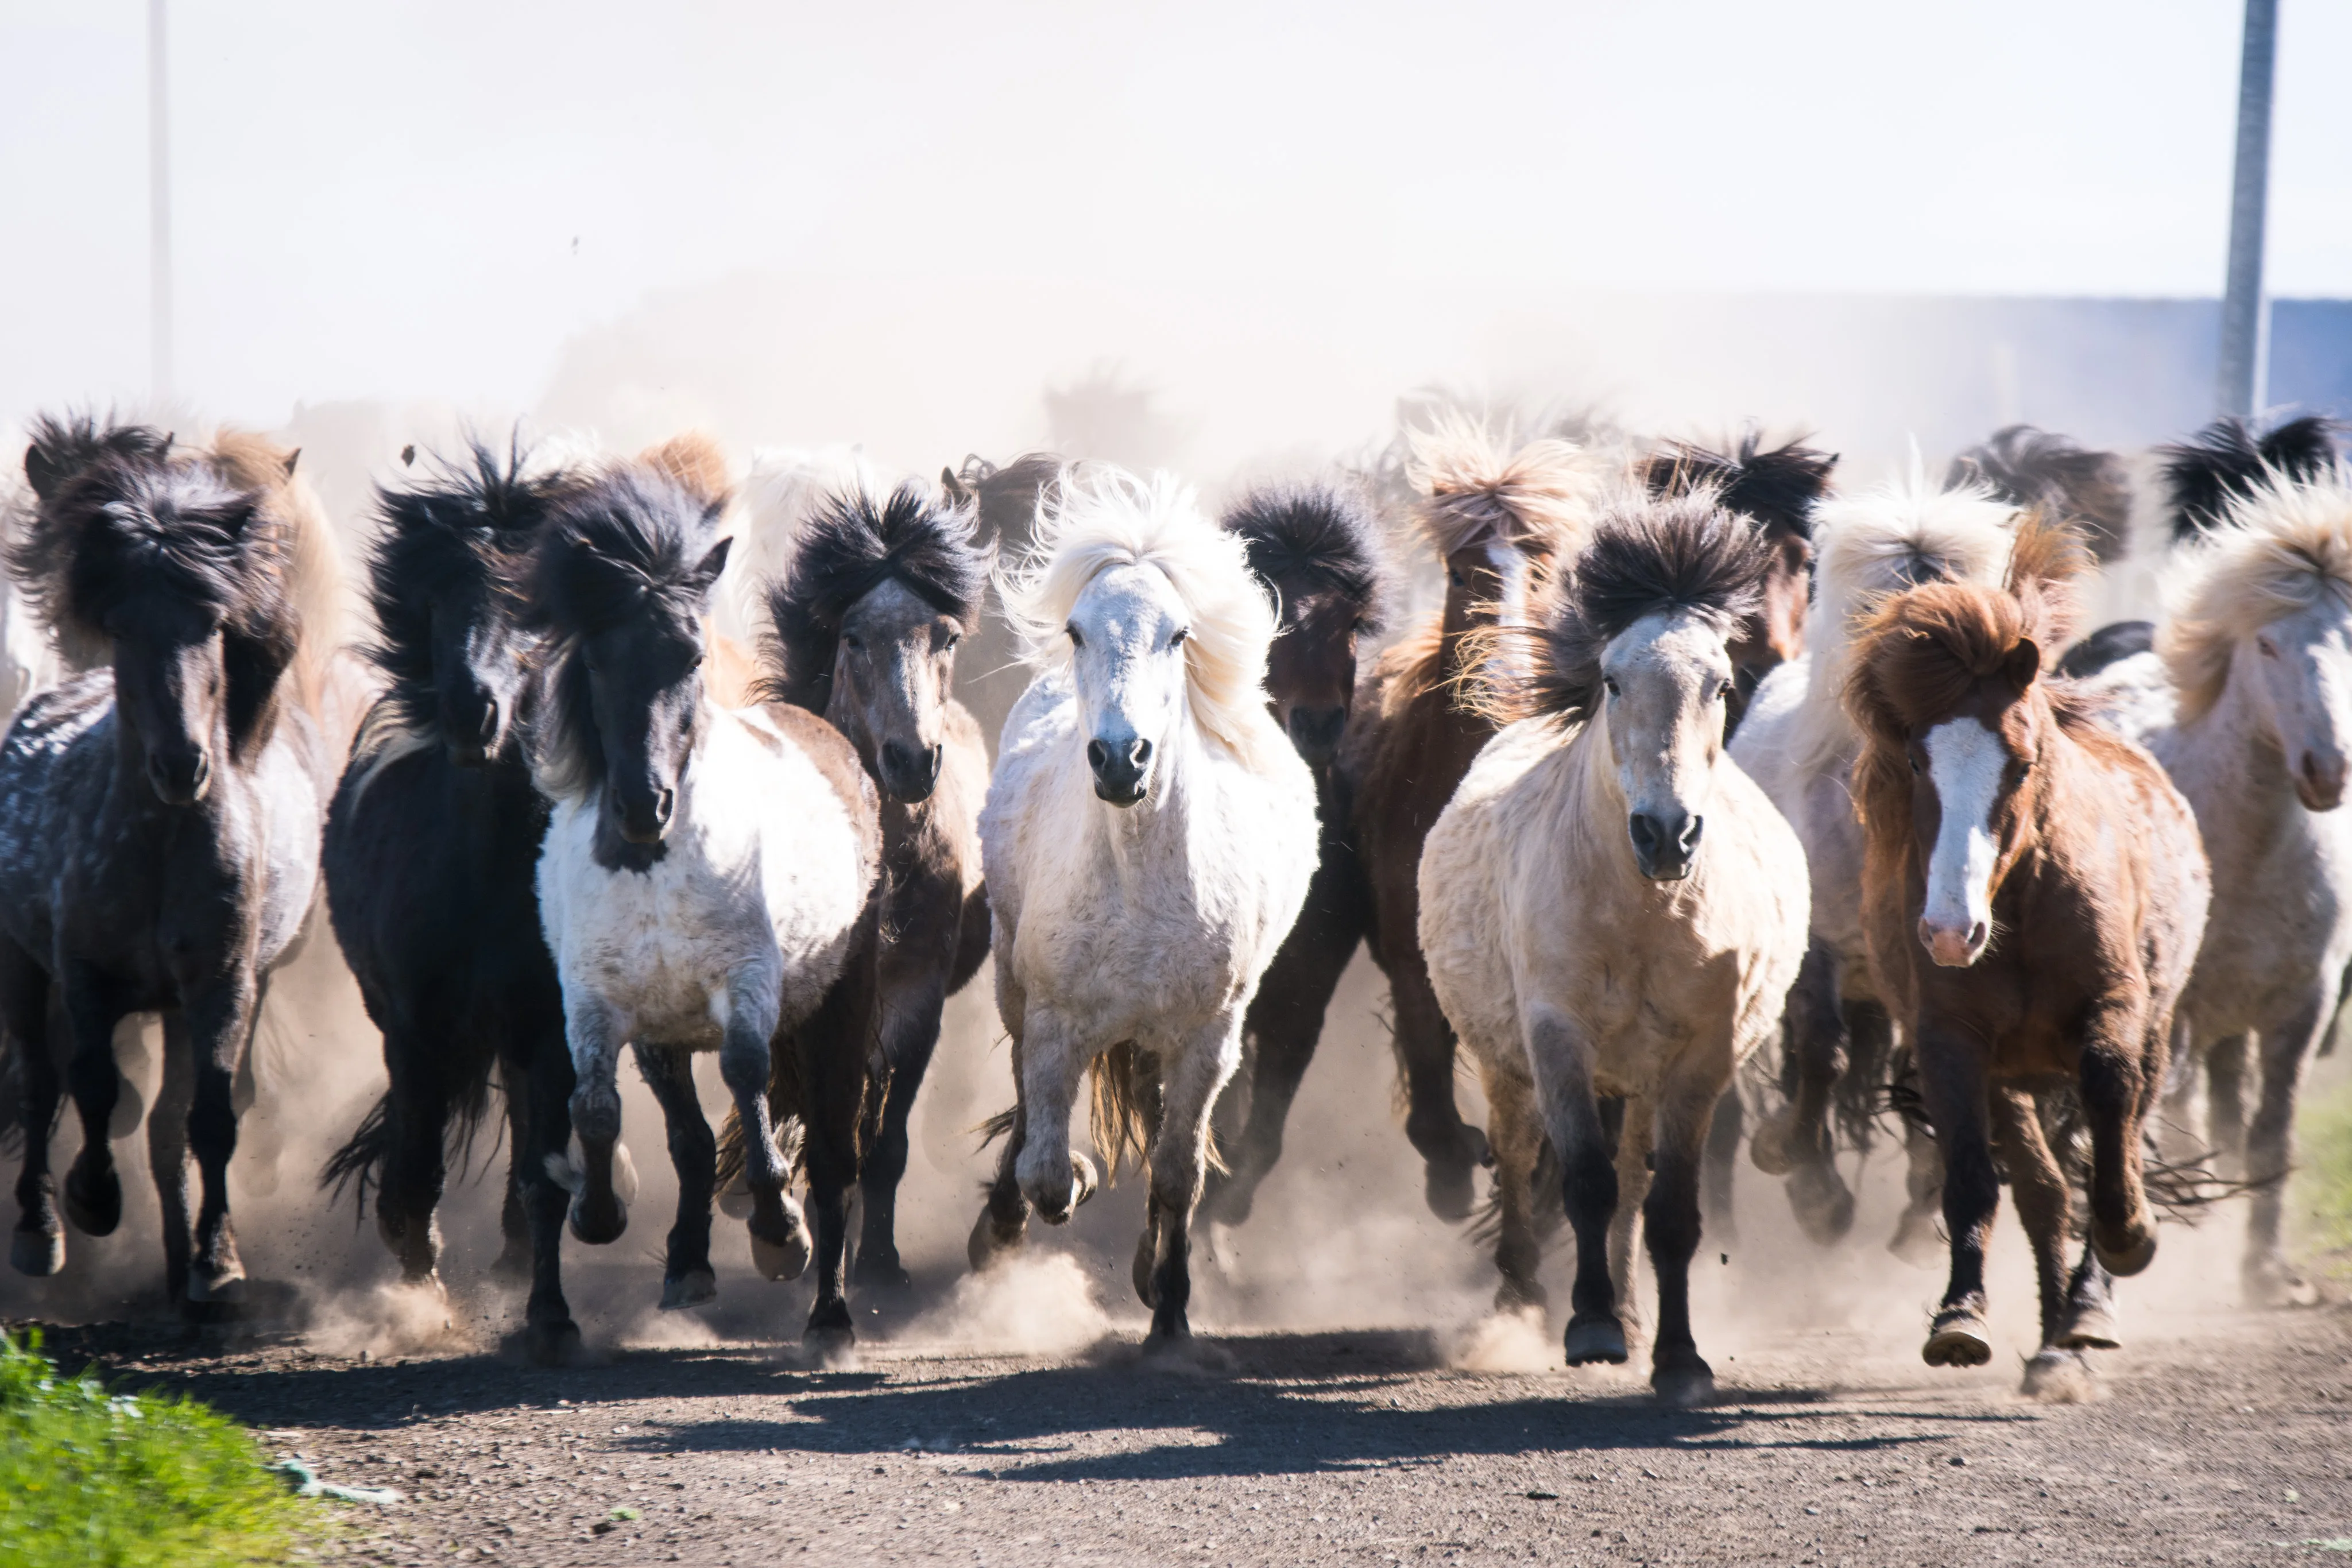 Island Islandpferde Herde FotoCarlotaBlankenmaier
Herde an Islandpferden läuft auf Betrachter zu